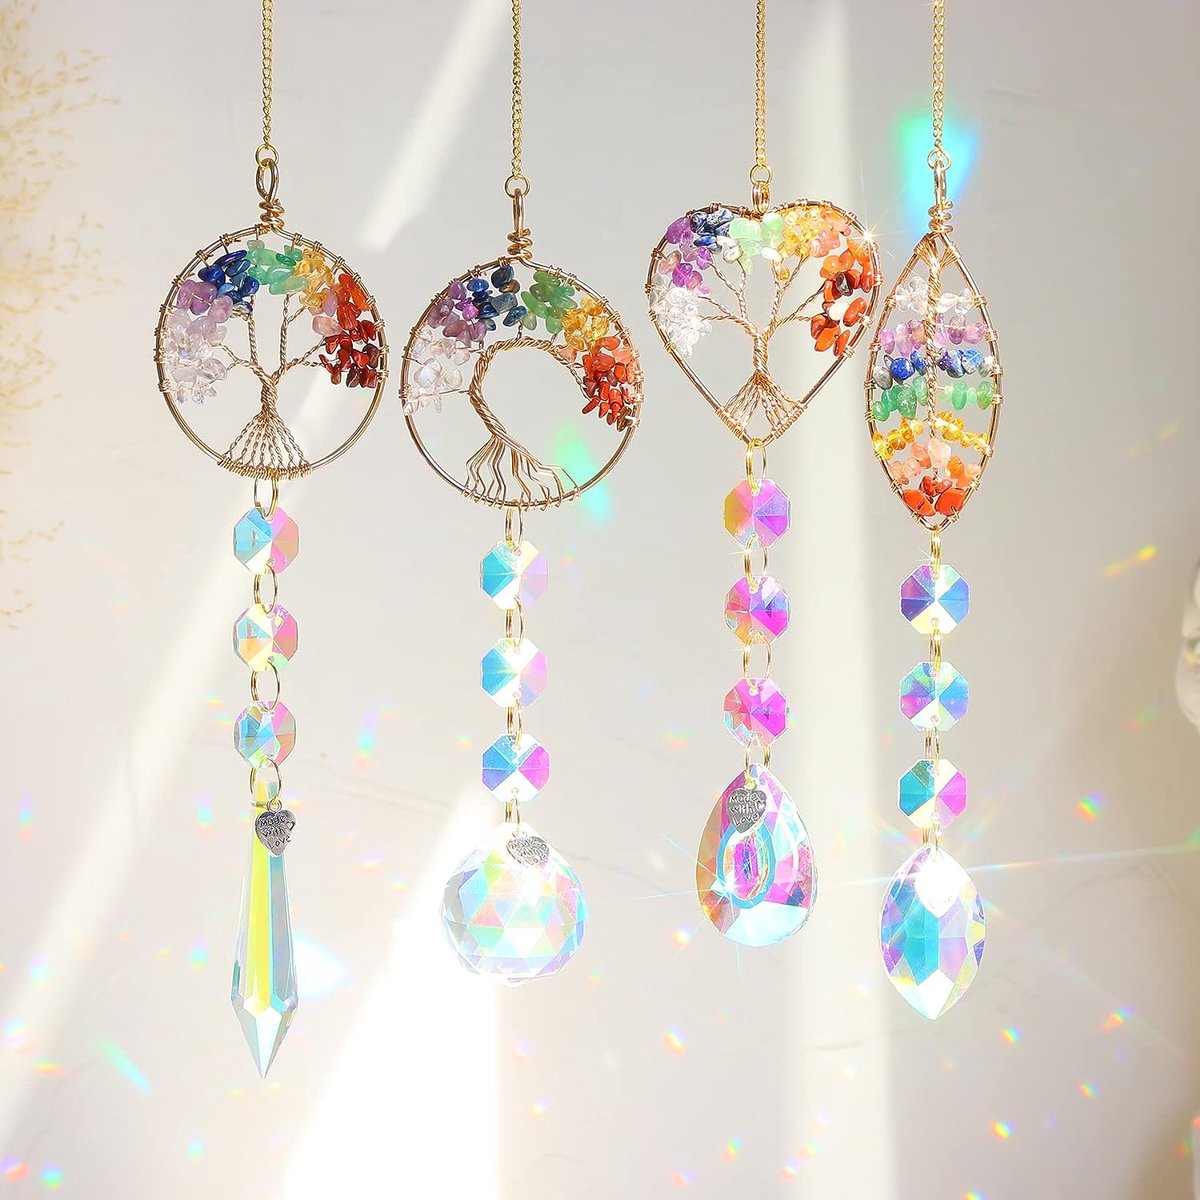 Attrape-soleil arc-en-ciel en cristal, 3 pièces/lot, lustre suspendu, arbre  de noël, décoration de maison, ornement de fenêtre